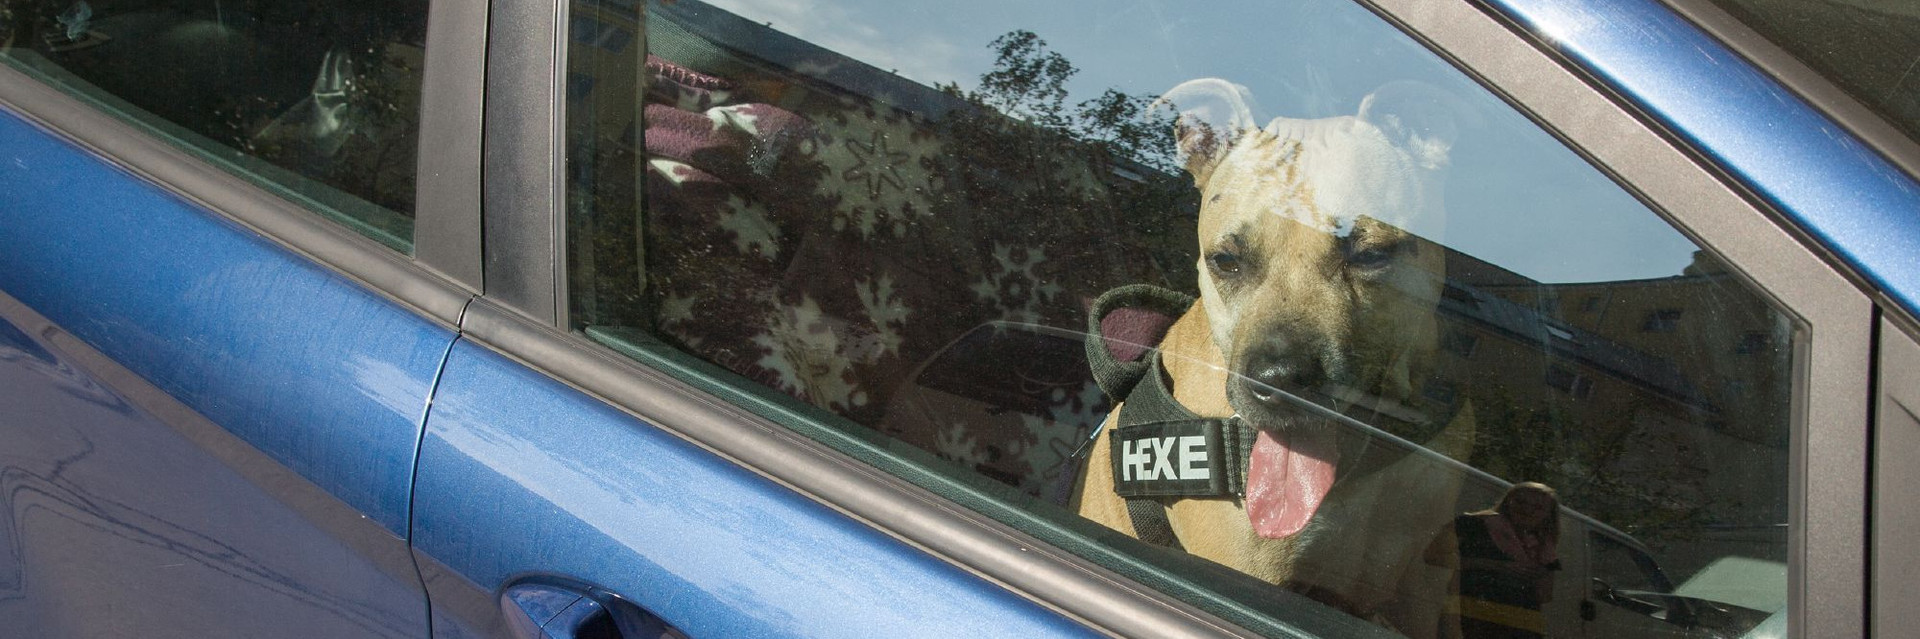 Dog in a car in summer